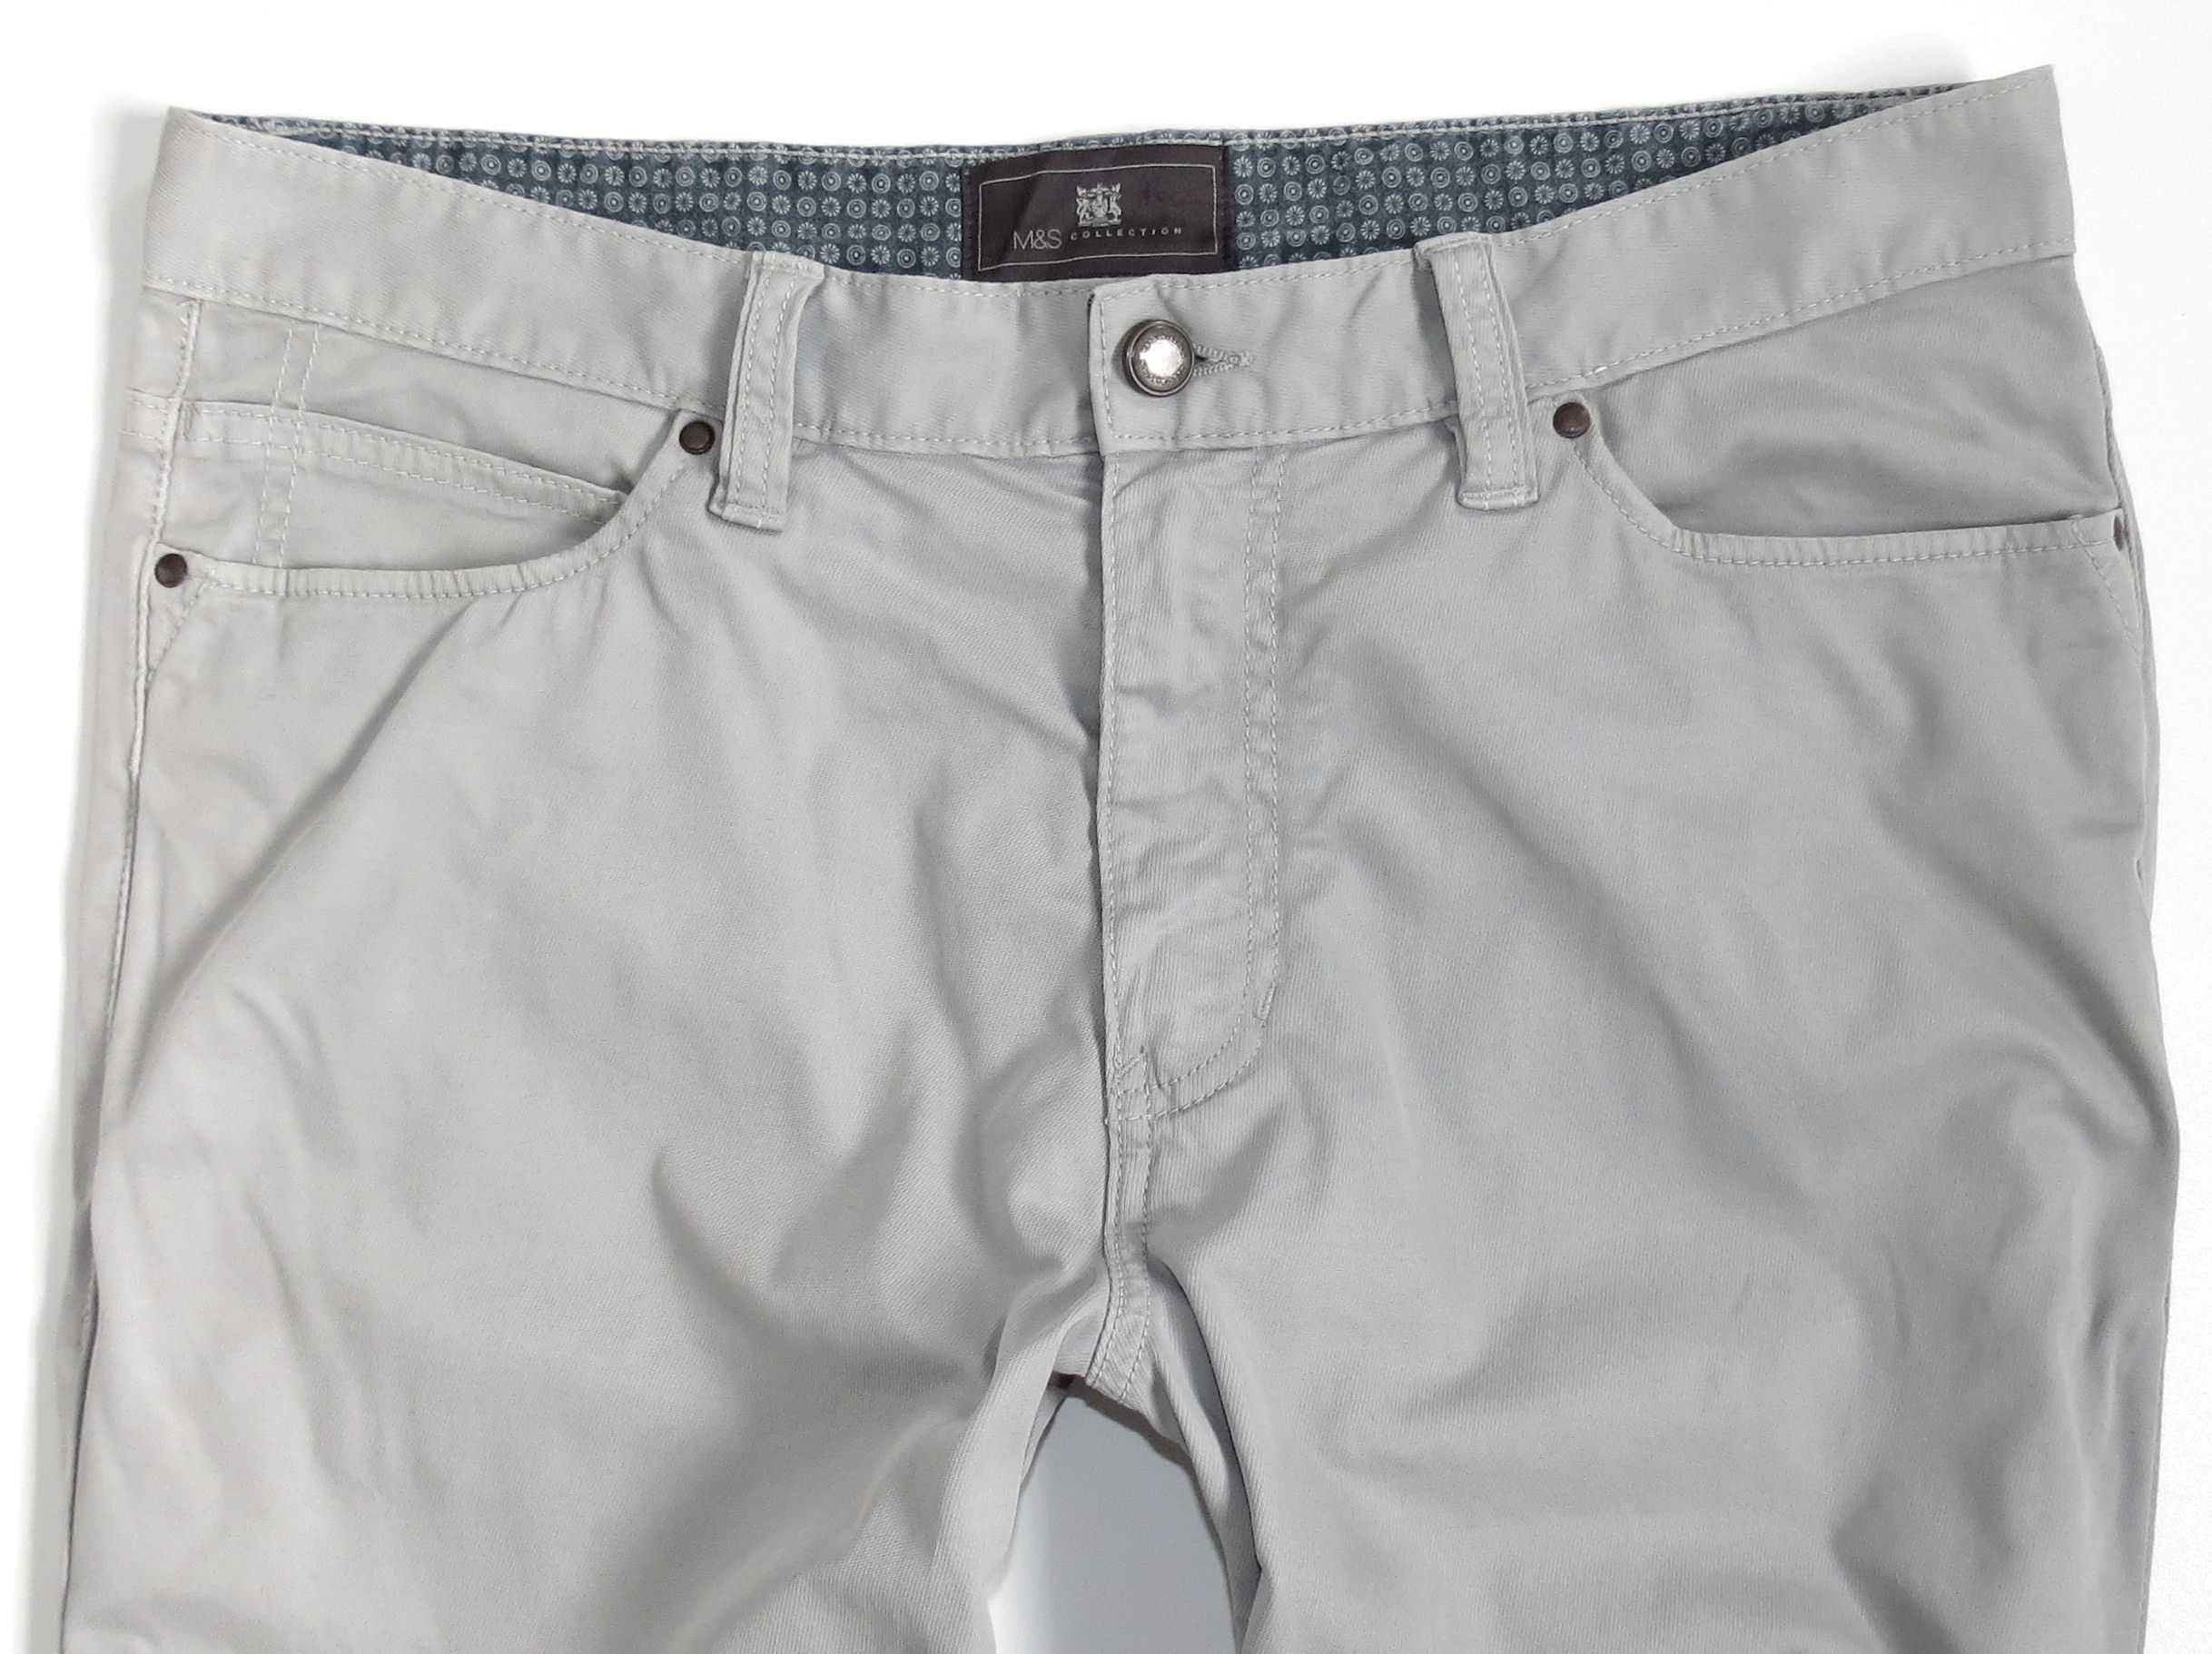 Spodnie męskie M&S Marks Spencer jeans L pas 88